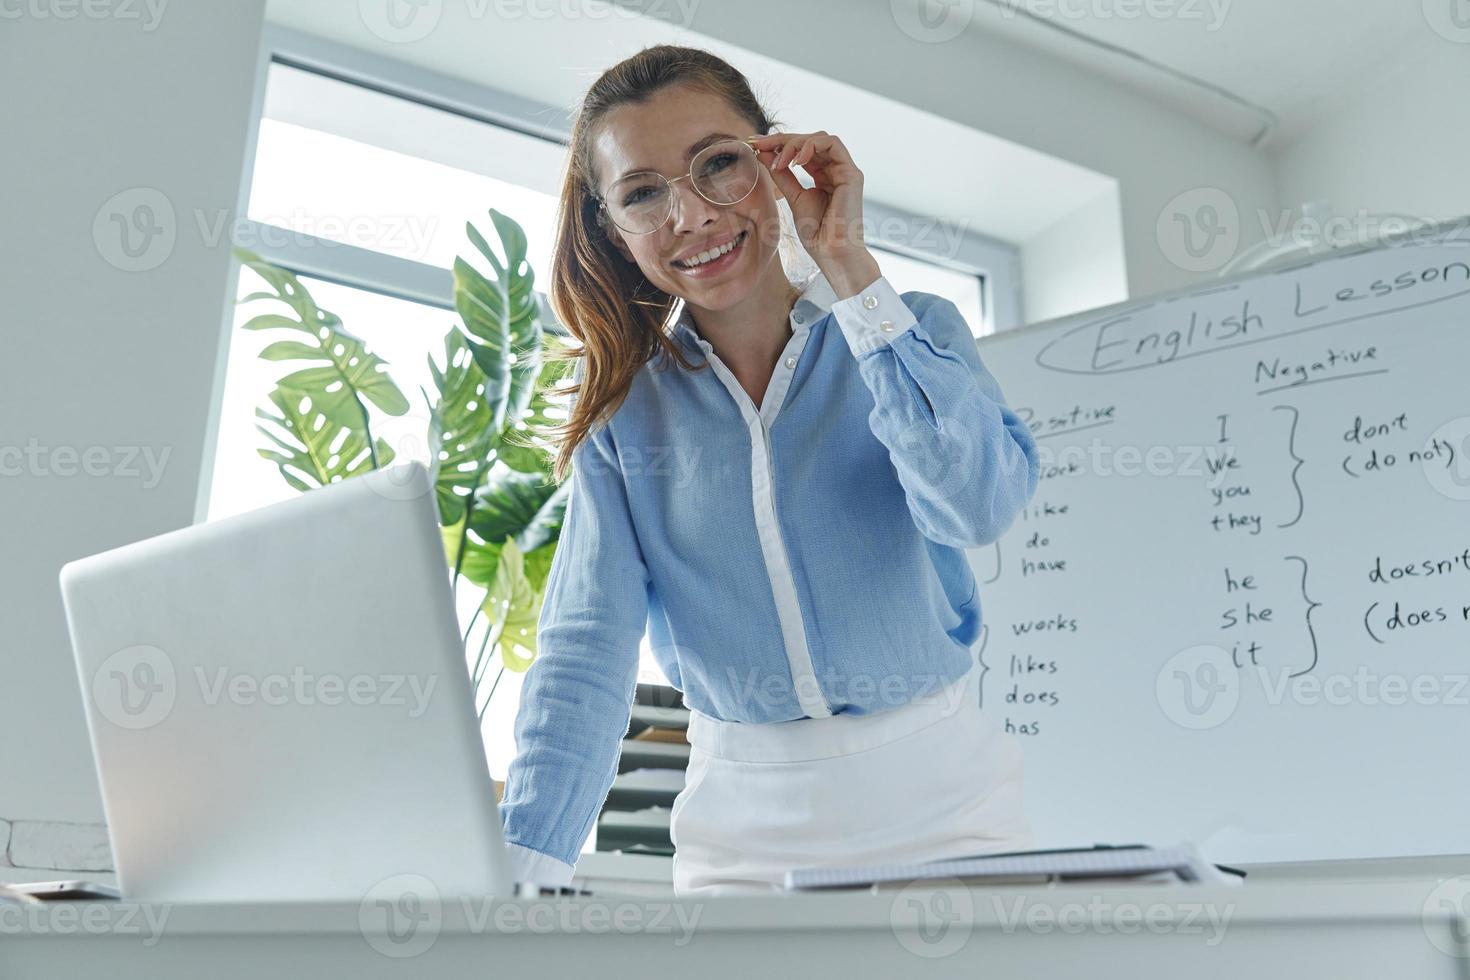 jovem feliz usando laptop em pé perto do quadro branco na sala de aula foto